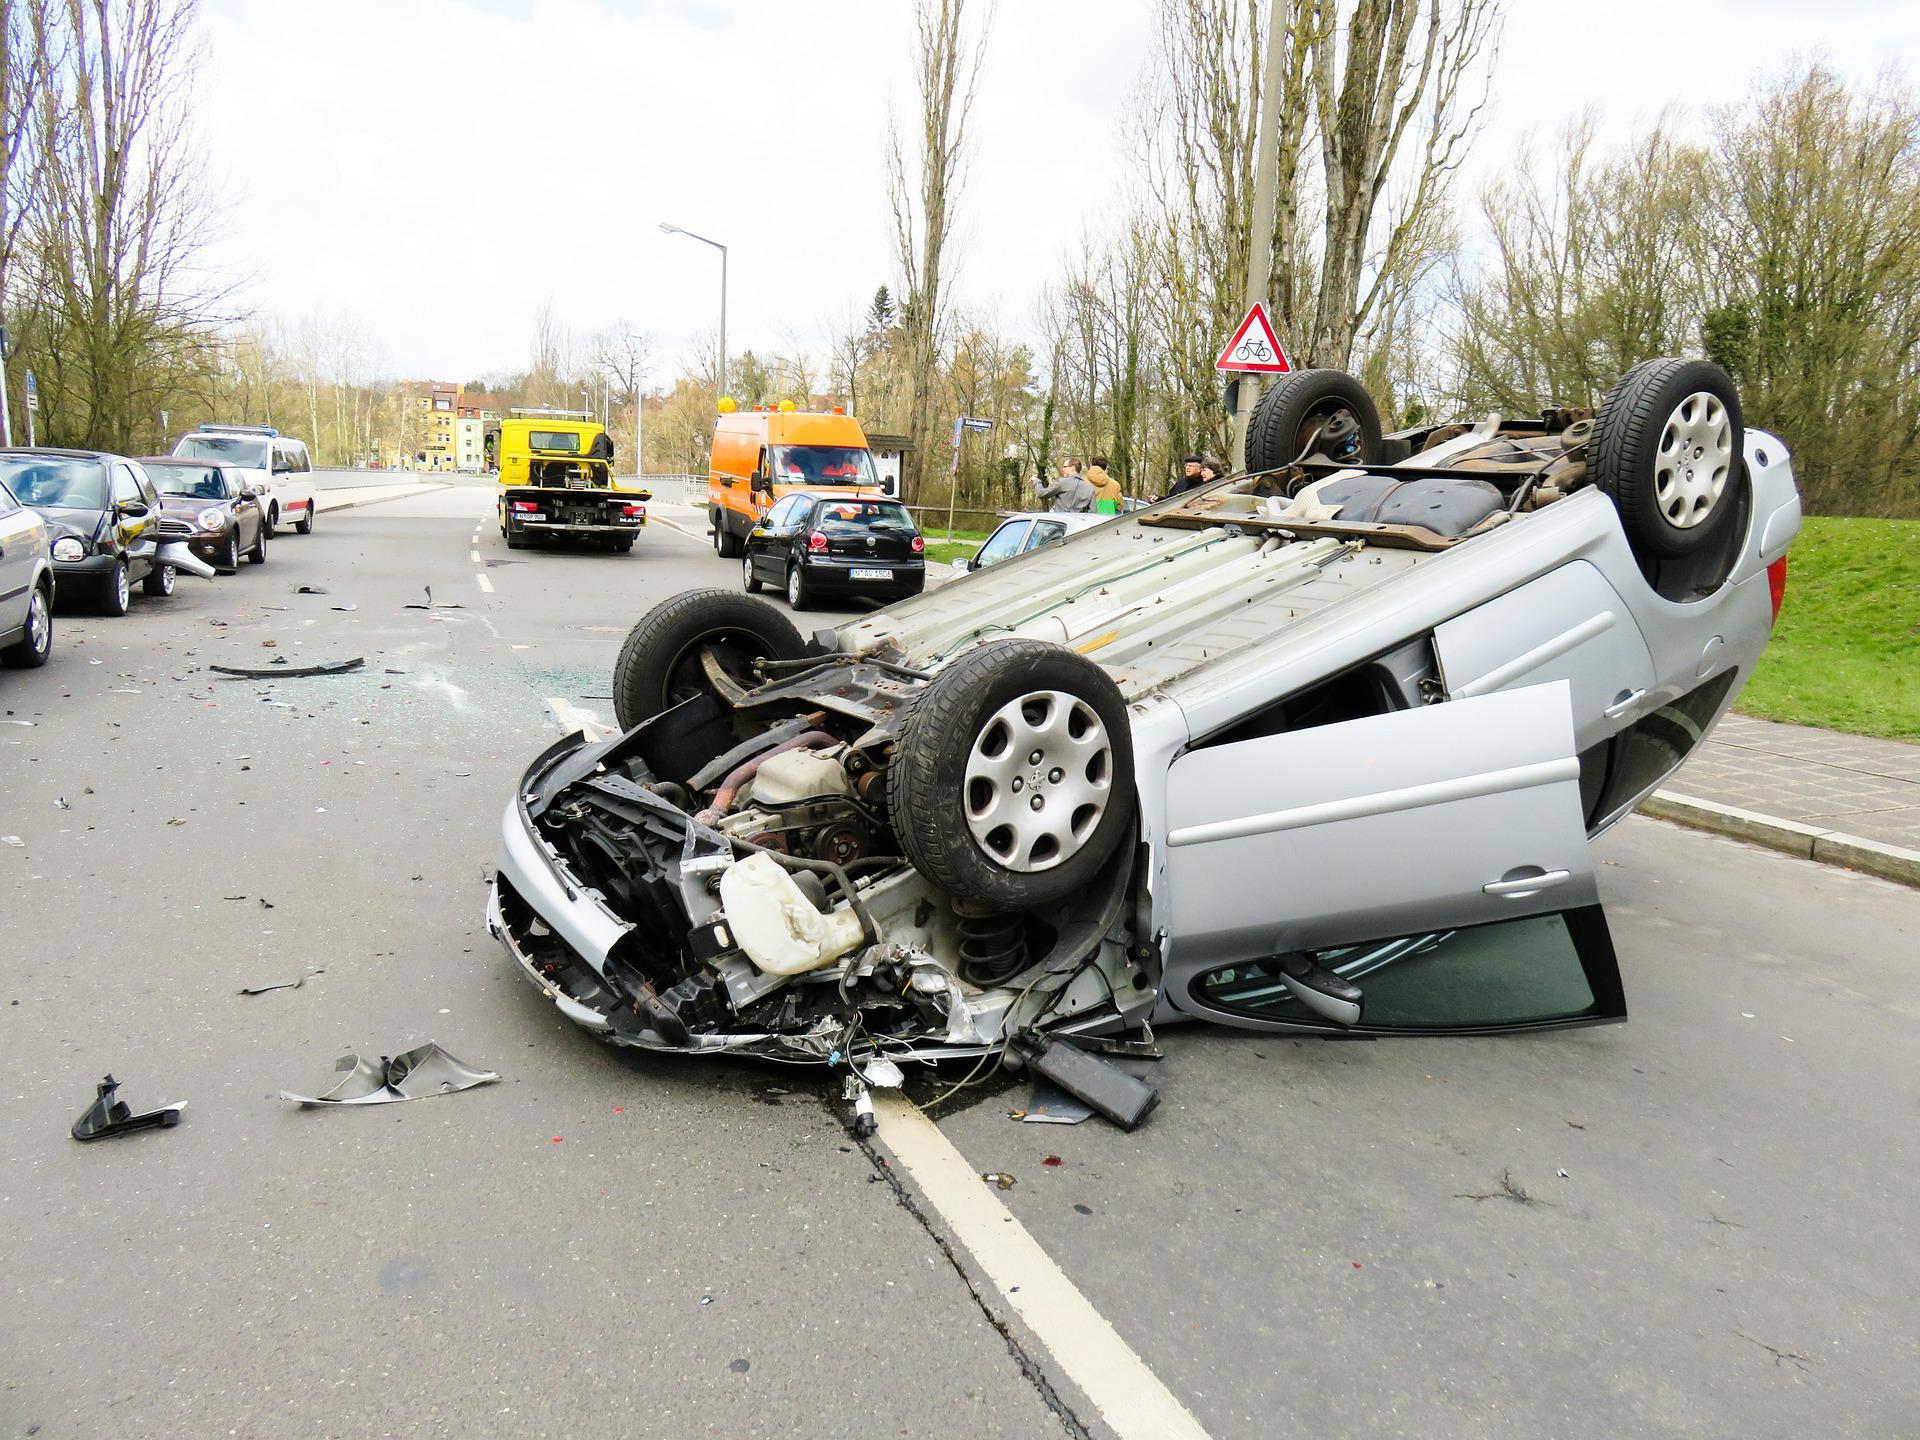 Incidente stradale: dopo il primo, rischio di recidiva o maggiore sicurezza?